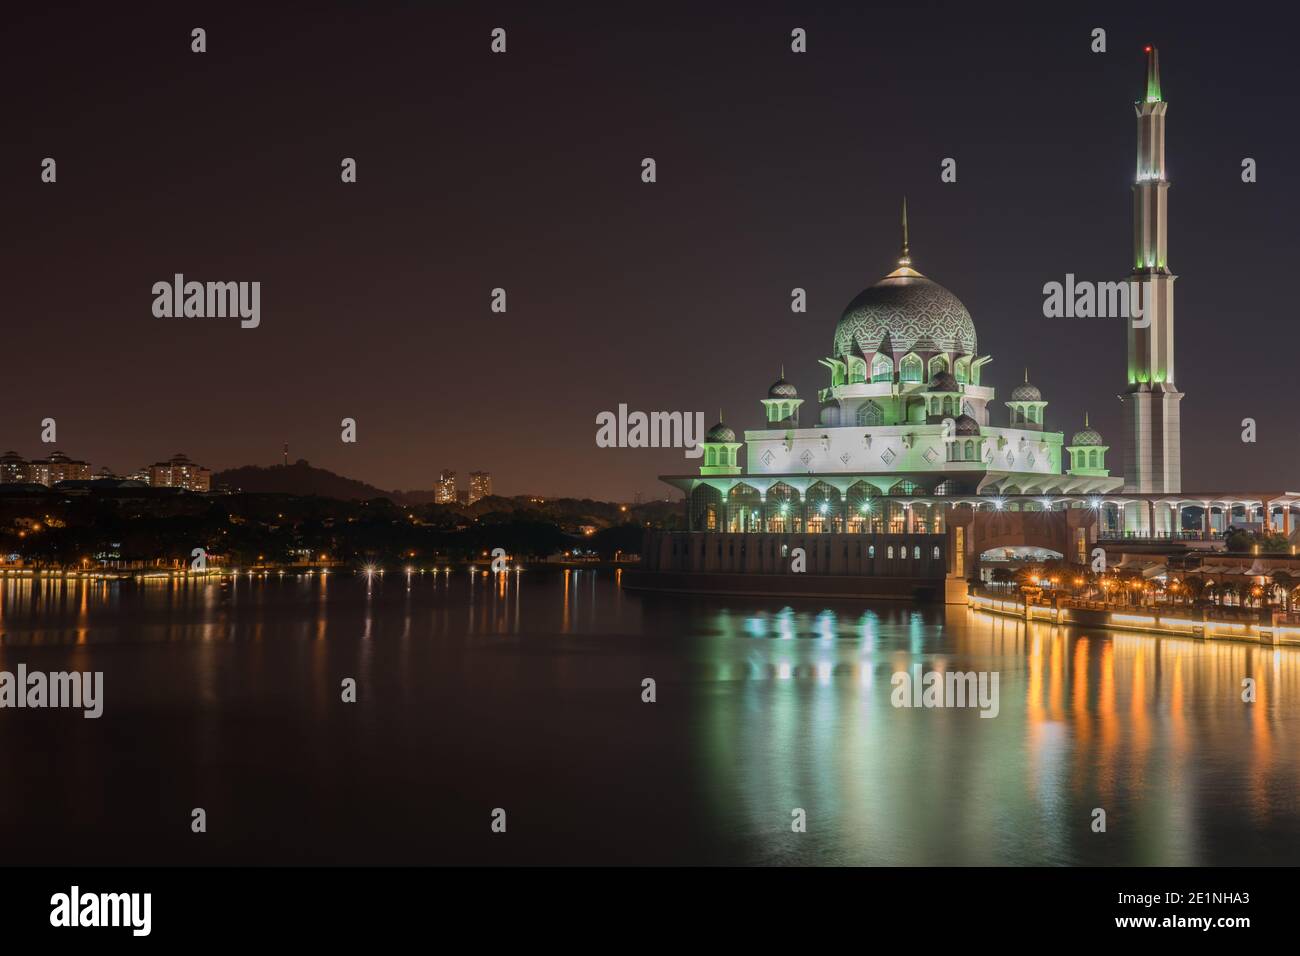 mosquée la nuit, les couleurs vives se reflètent sur l'eau Banque D'Images